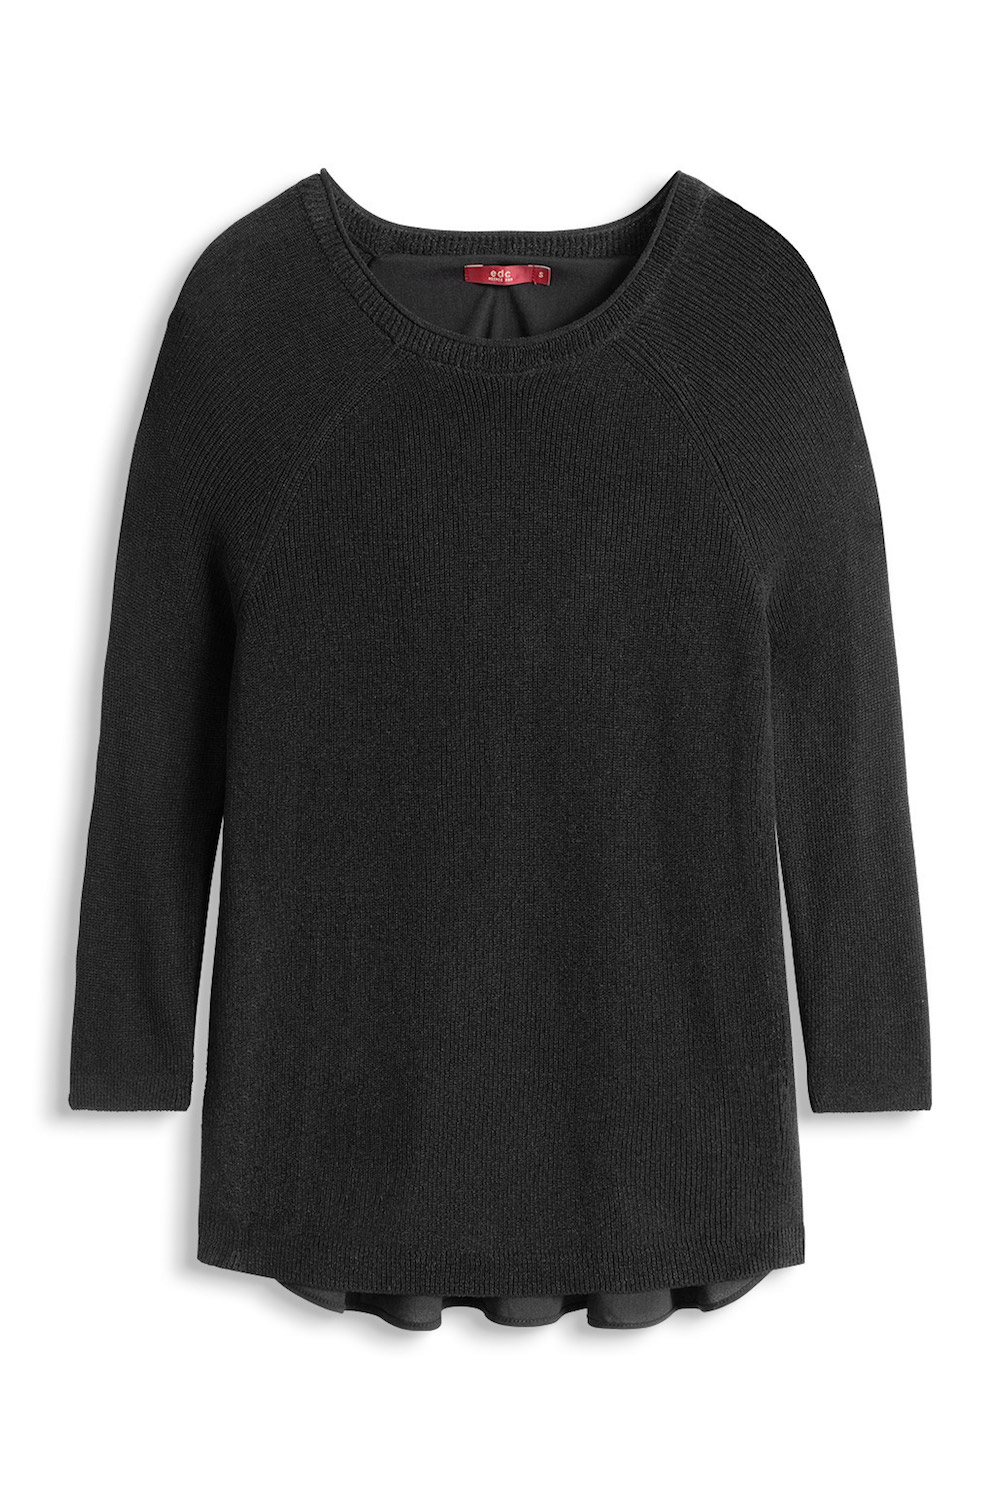 Esprit Black Sweater